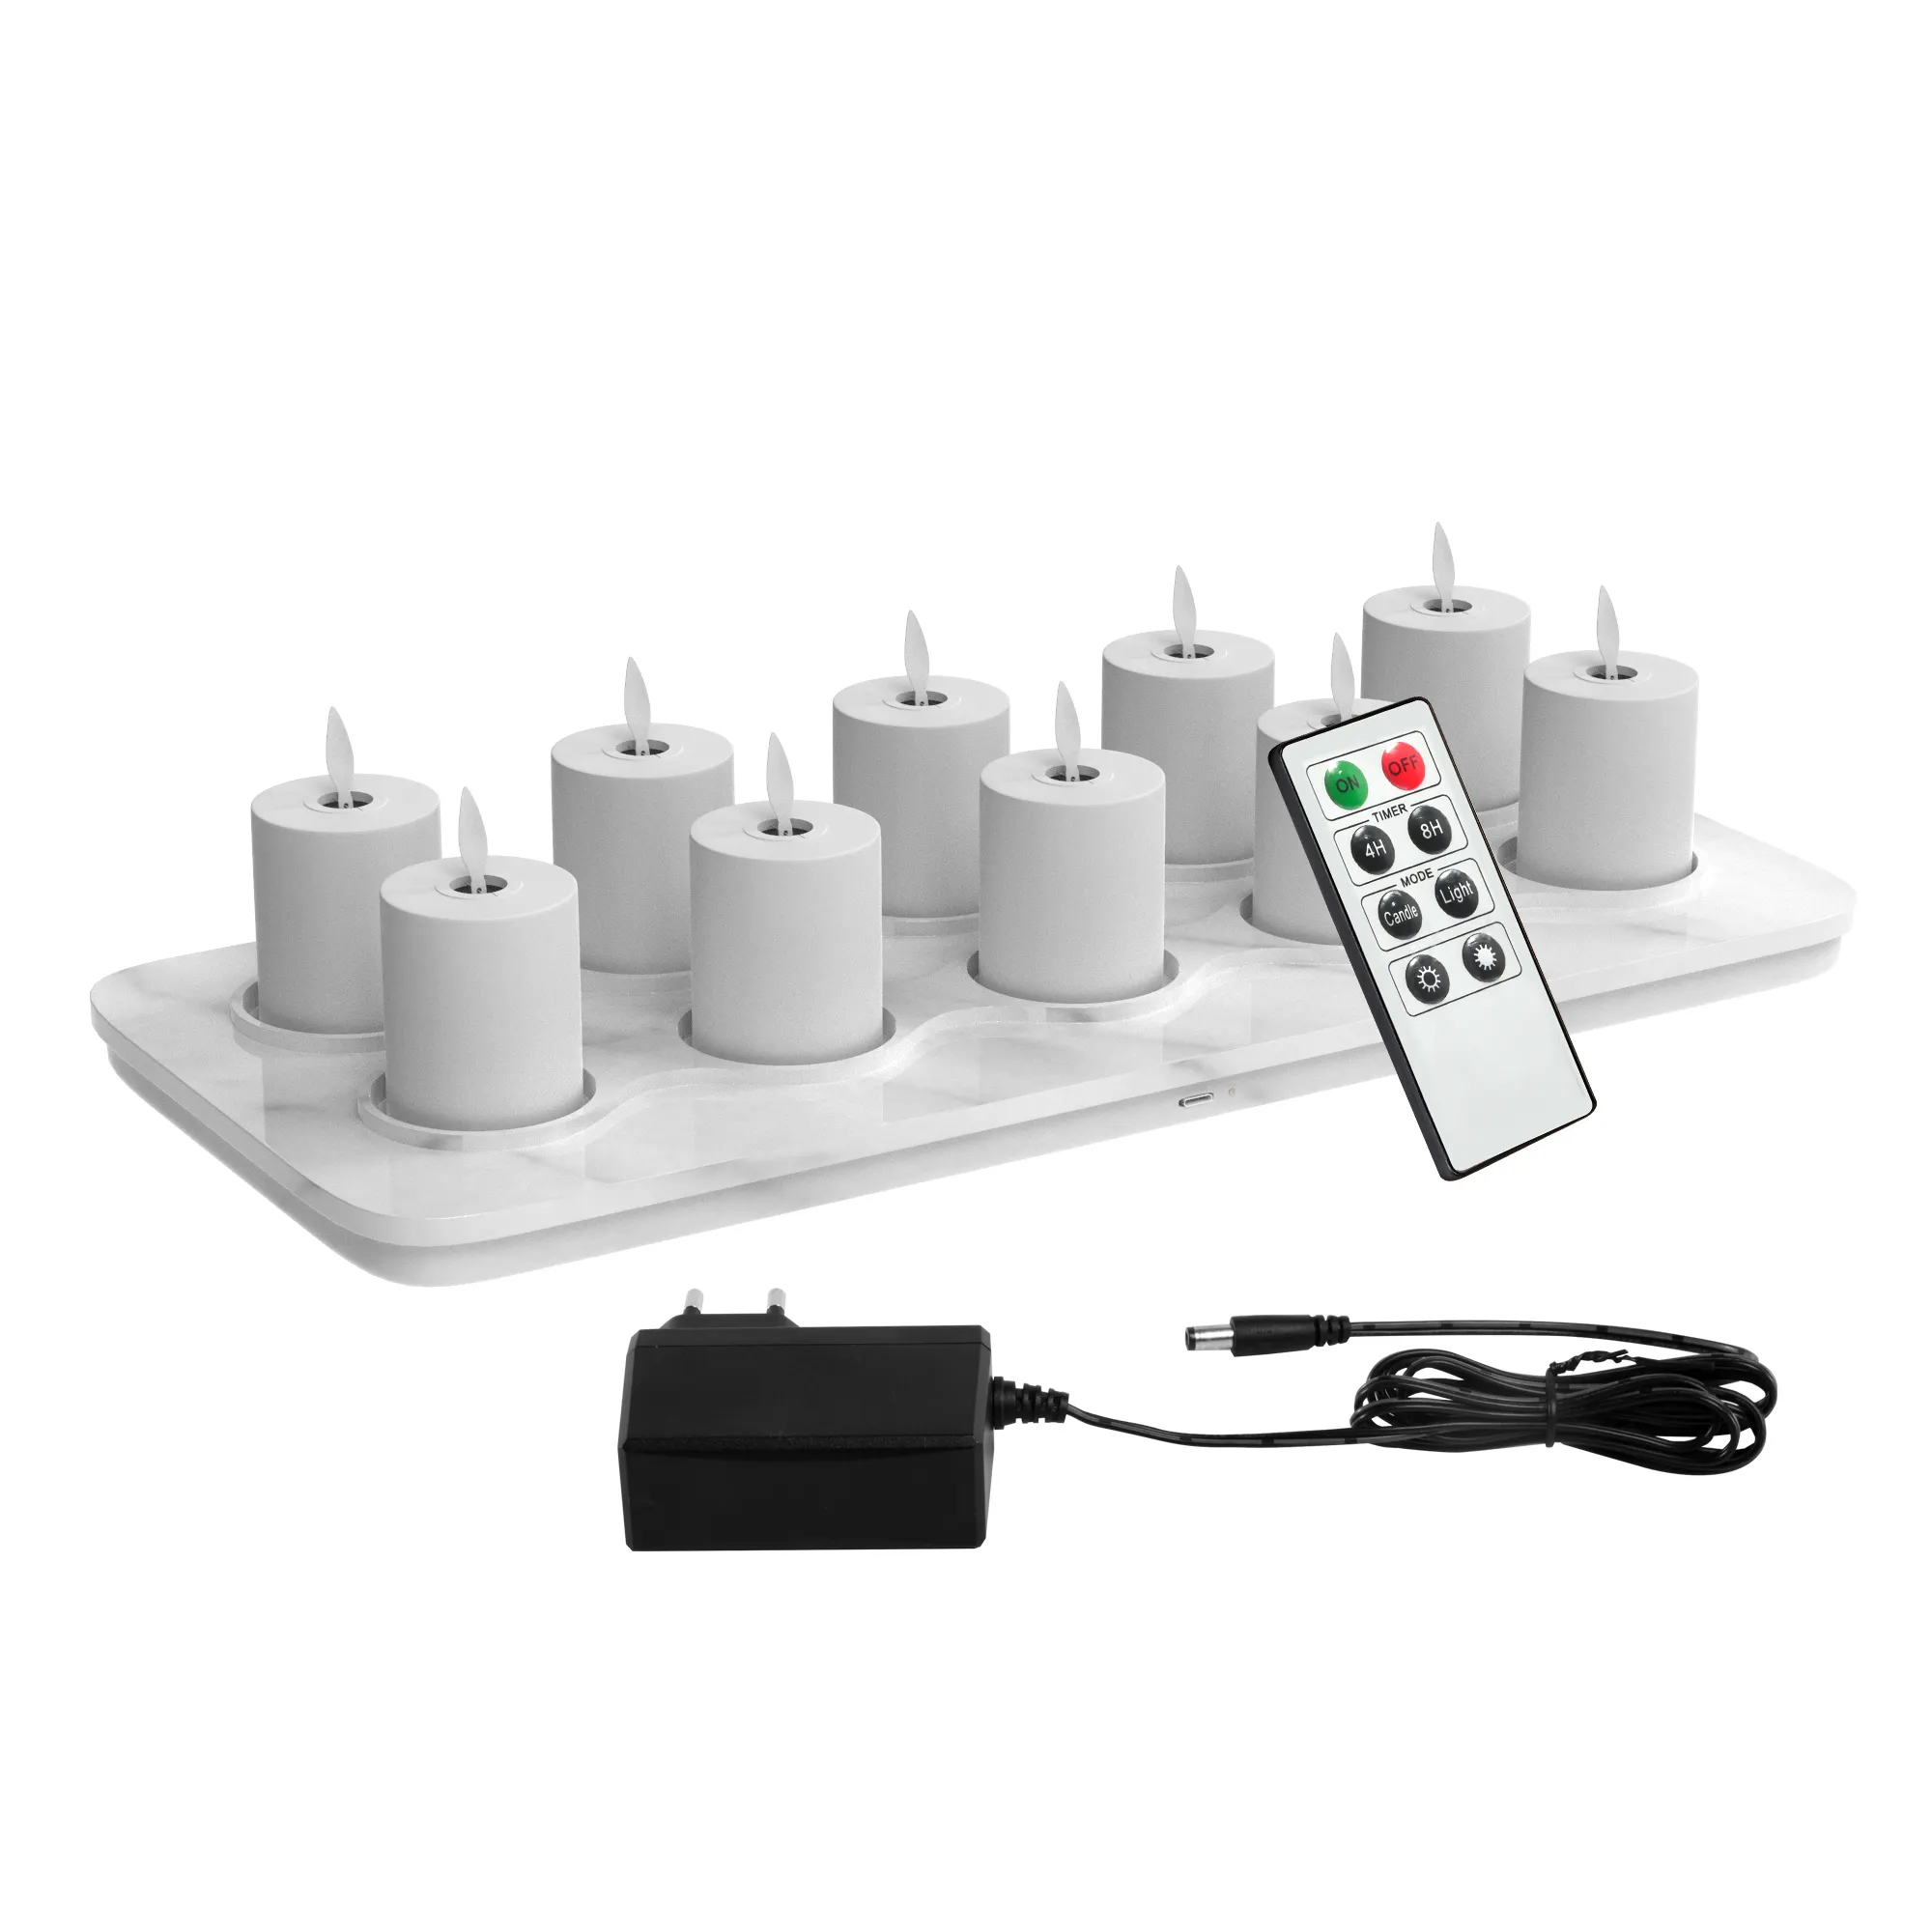 Calentador de velas Led inalámbrico recargable a precio de fábrica con Base de carga inductiva para hogares, hoteles, restaurantes con control remoto